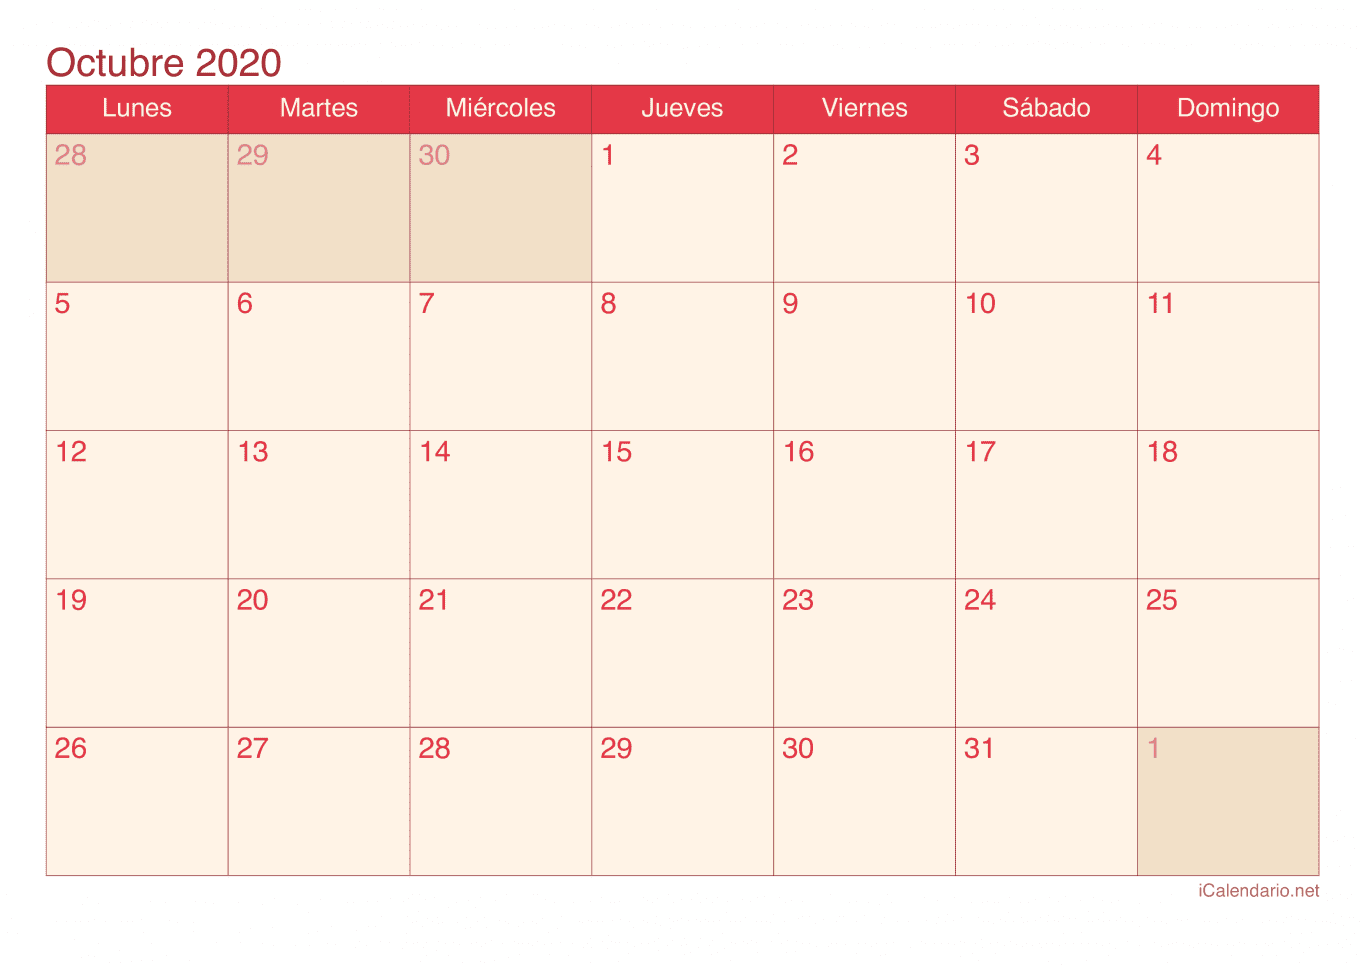 Calendario de octubre 2020 - Cherry